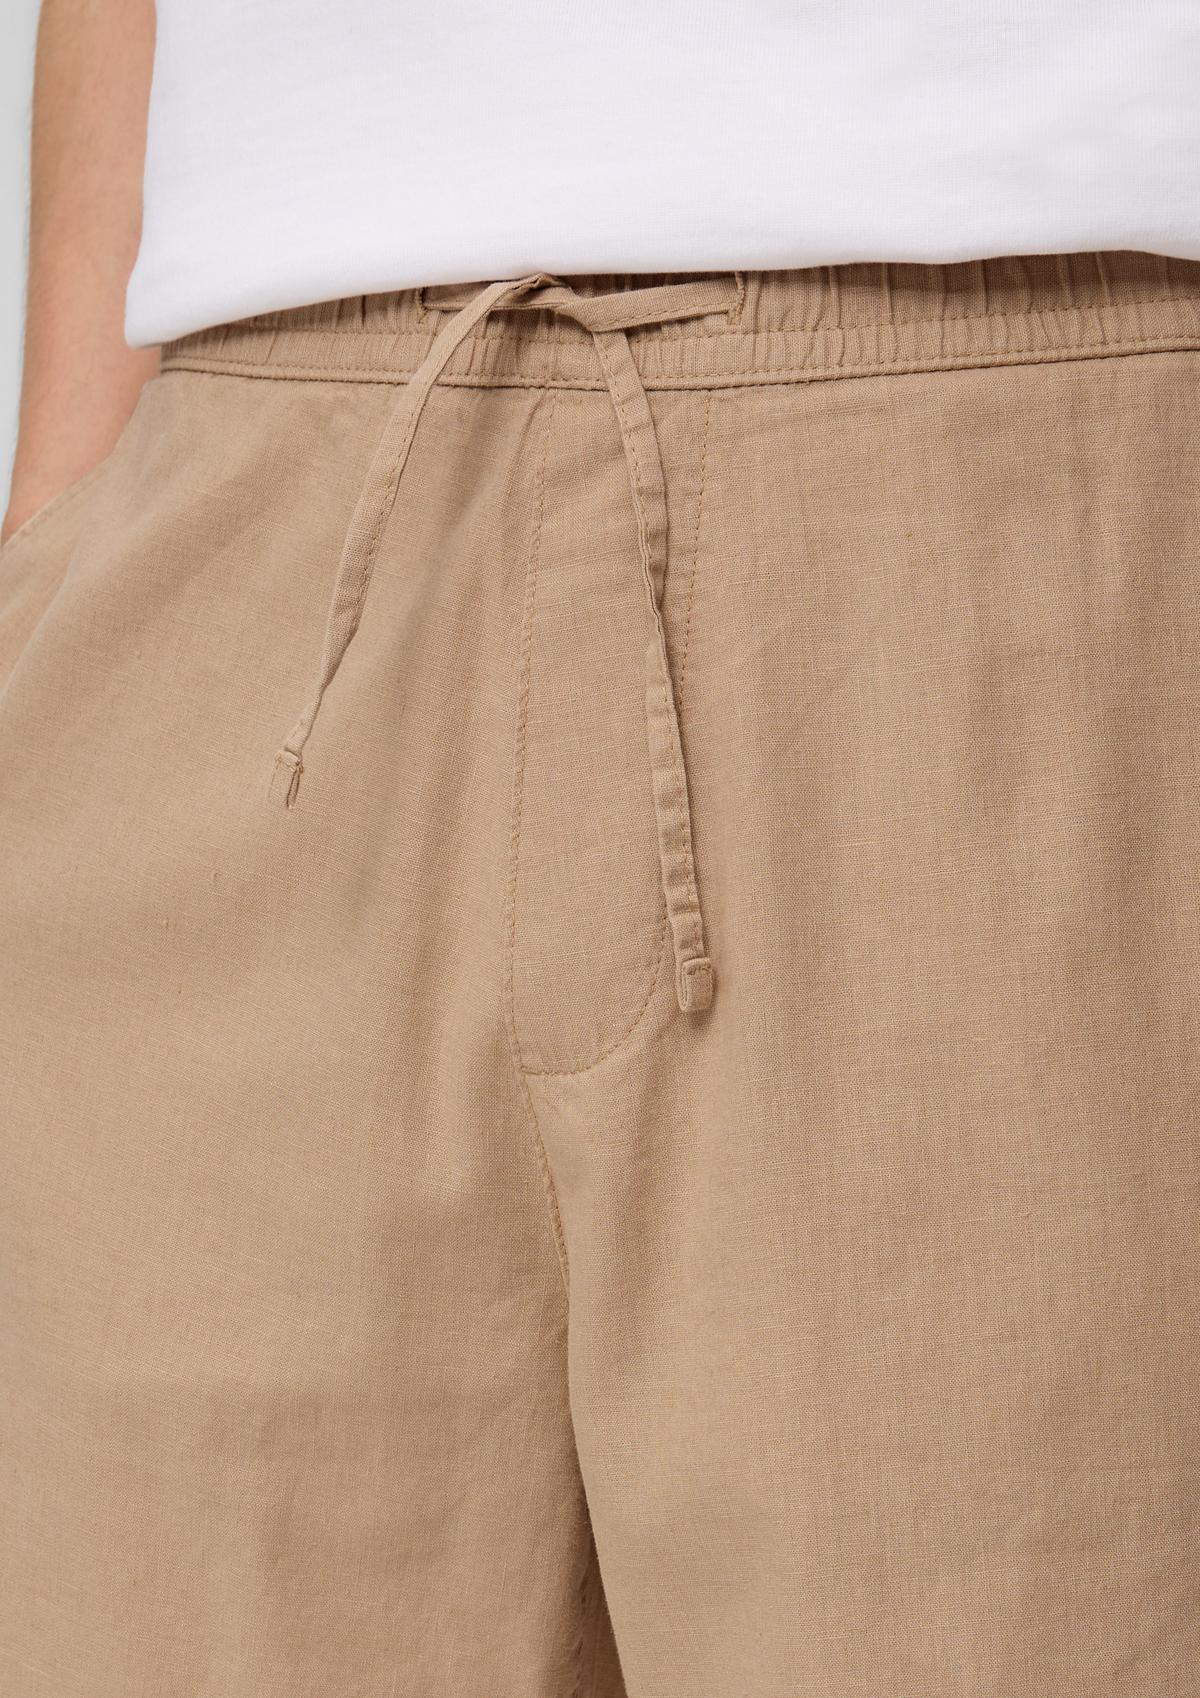 Bermuda shorts in blended linen - white